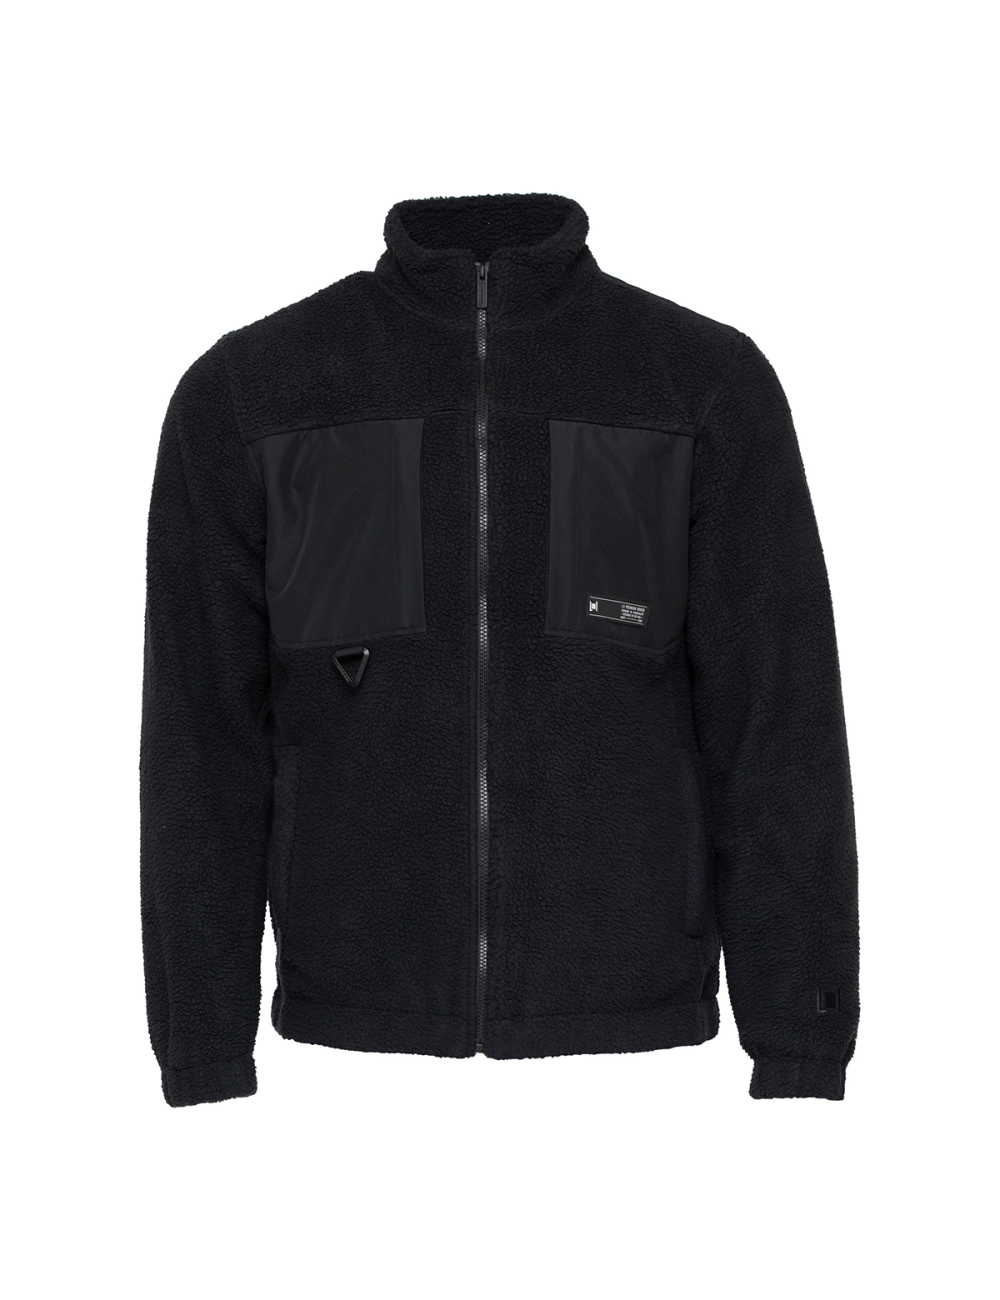 L1 Onyx Fleece Jacket - Black